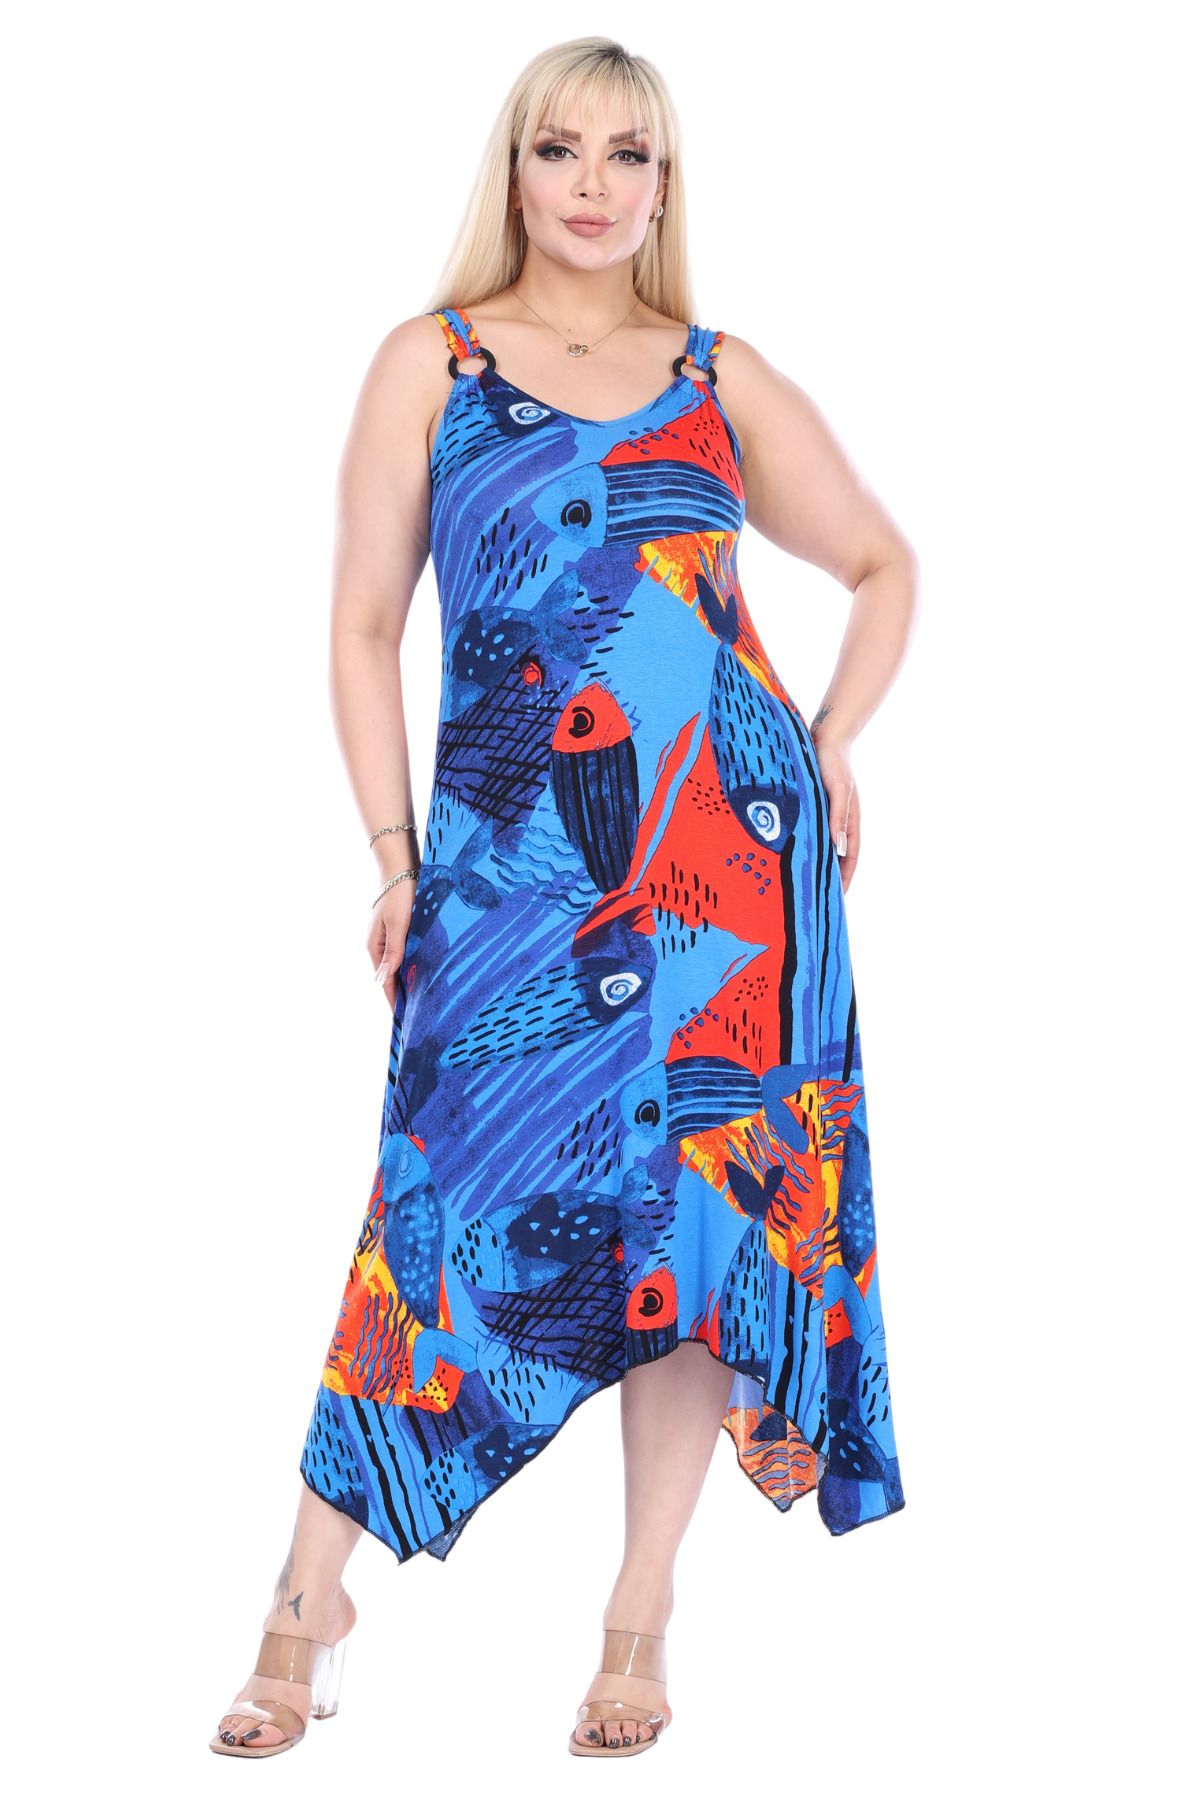 MELSAY Kadın Askılı Sax Balık Desenli Toka Detaylı Elbise